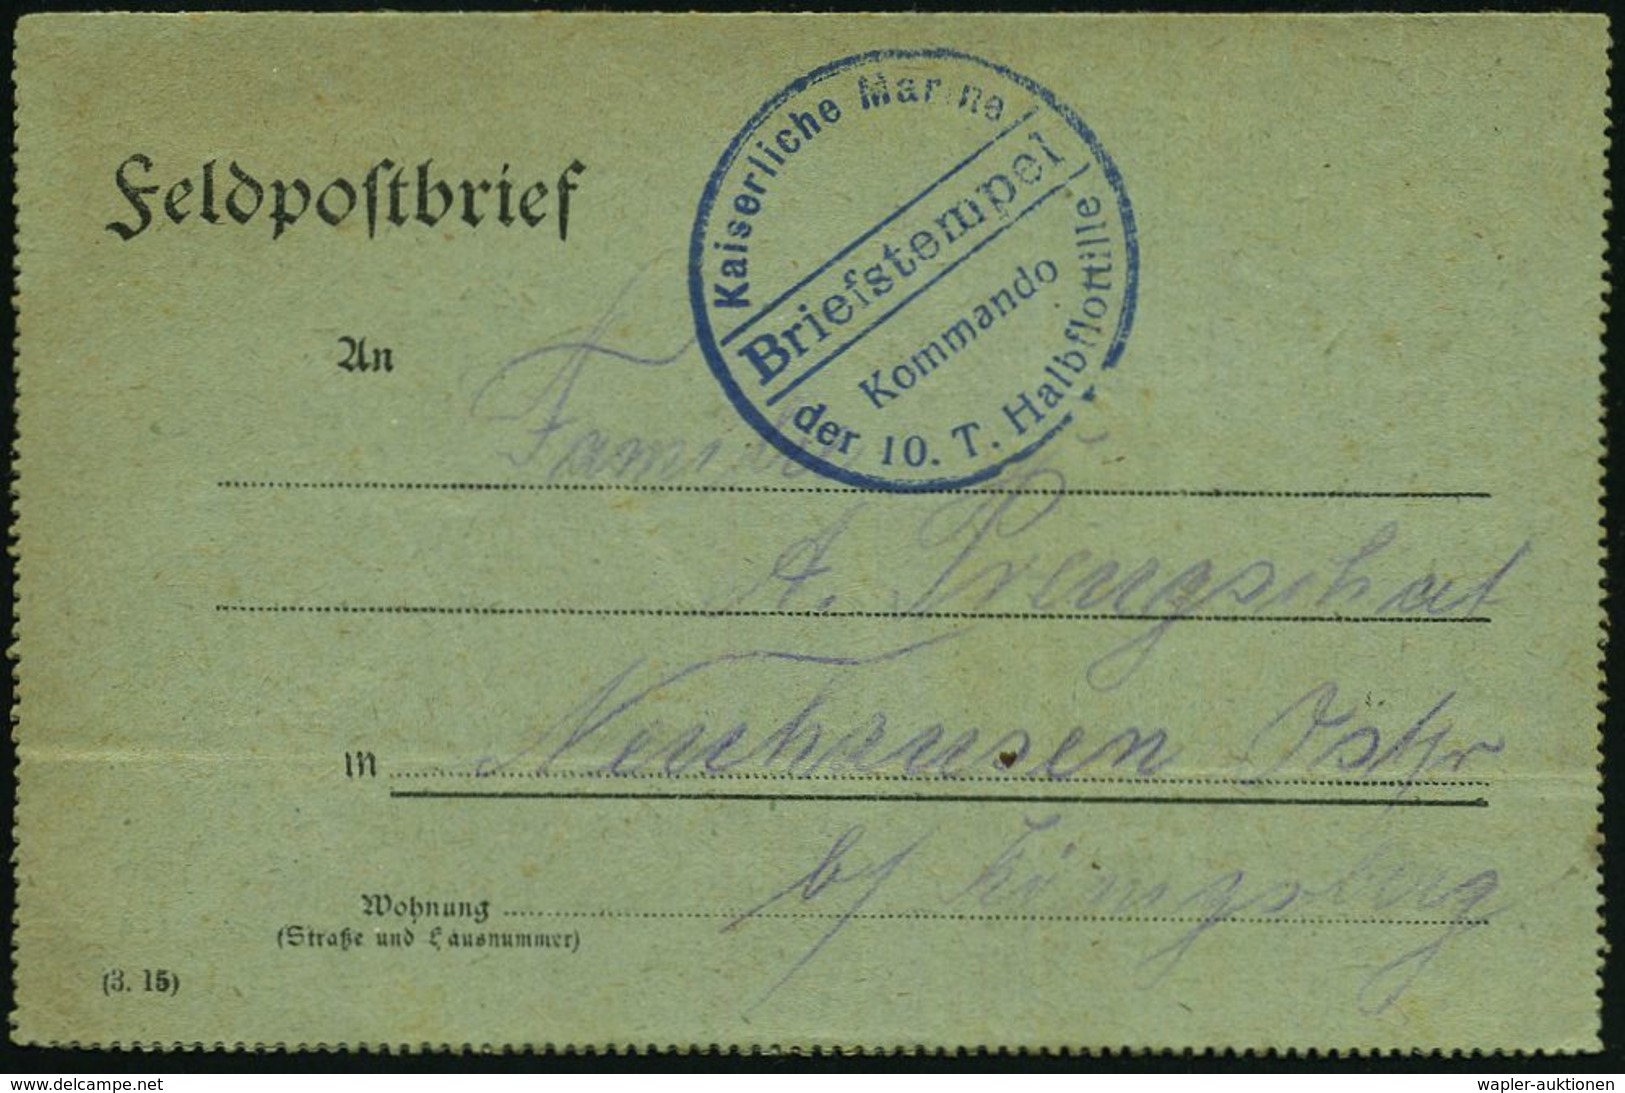 DEUTSCHES REICH 1918 (31.5.) Blauer 1K-Brücken-Briefstempel: Kaiserliche Marine/Kommando/der 10. T.(orpedoboots)-Halbflo - Maritime